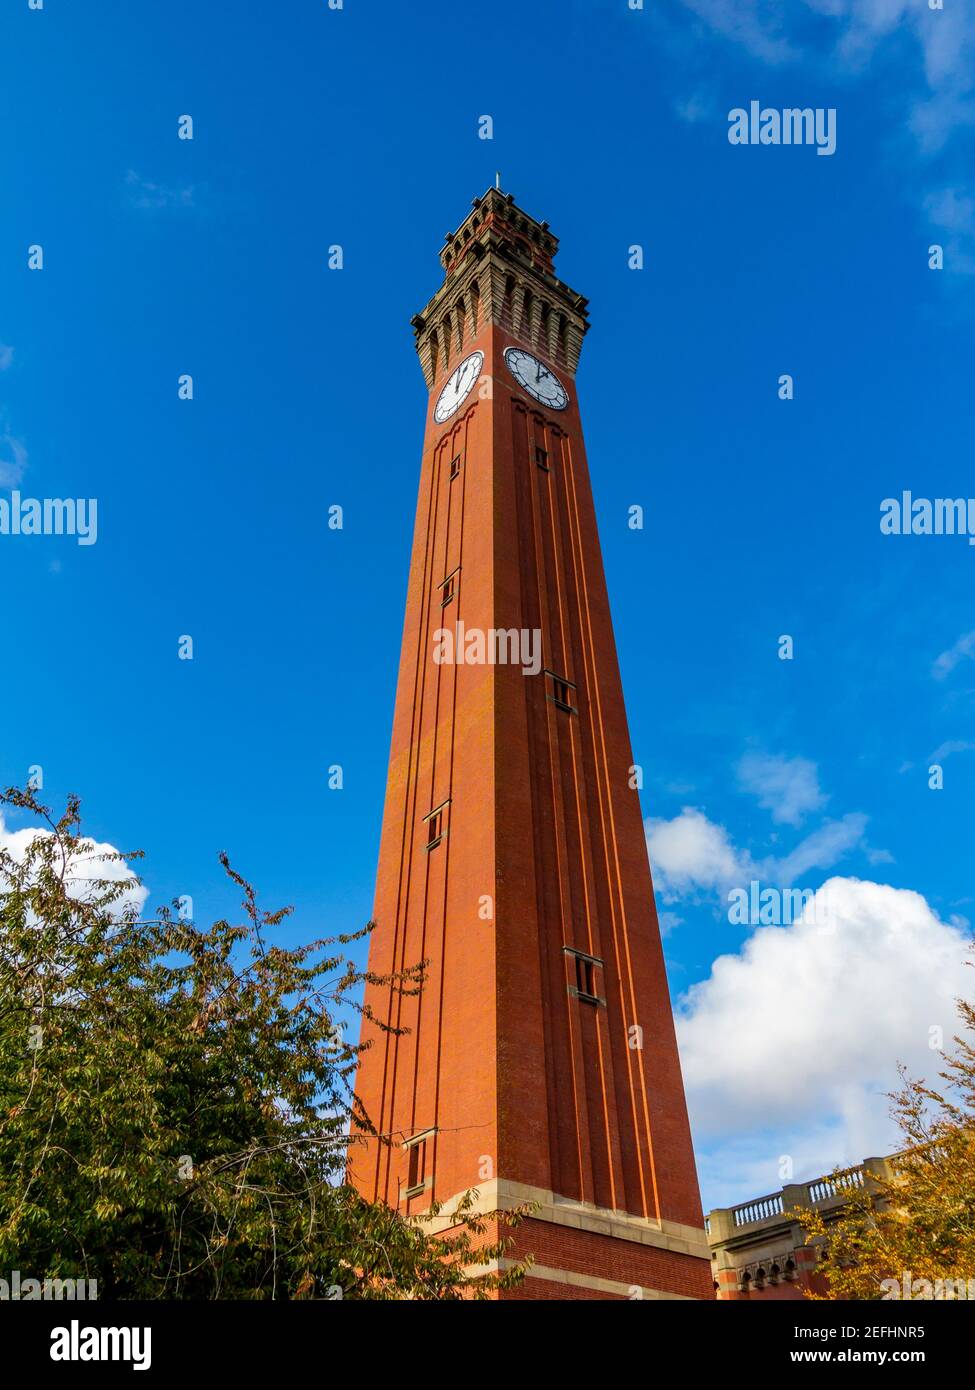 La torre dell'orologio Joseph Chamberlain Memorial all'Università di Birmingham Edgbaston UK la torre dell'orologio più alta del mondo costruito nel 1900-1908 Foto Stock